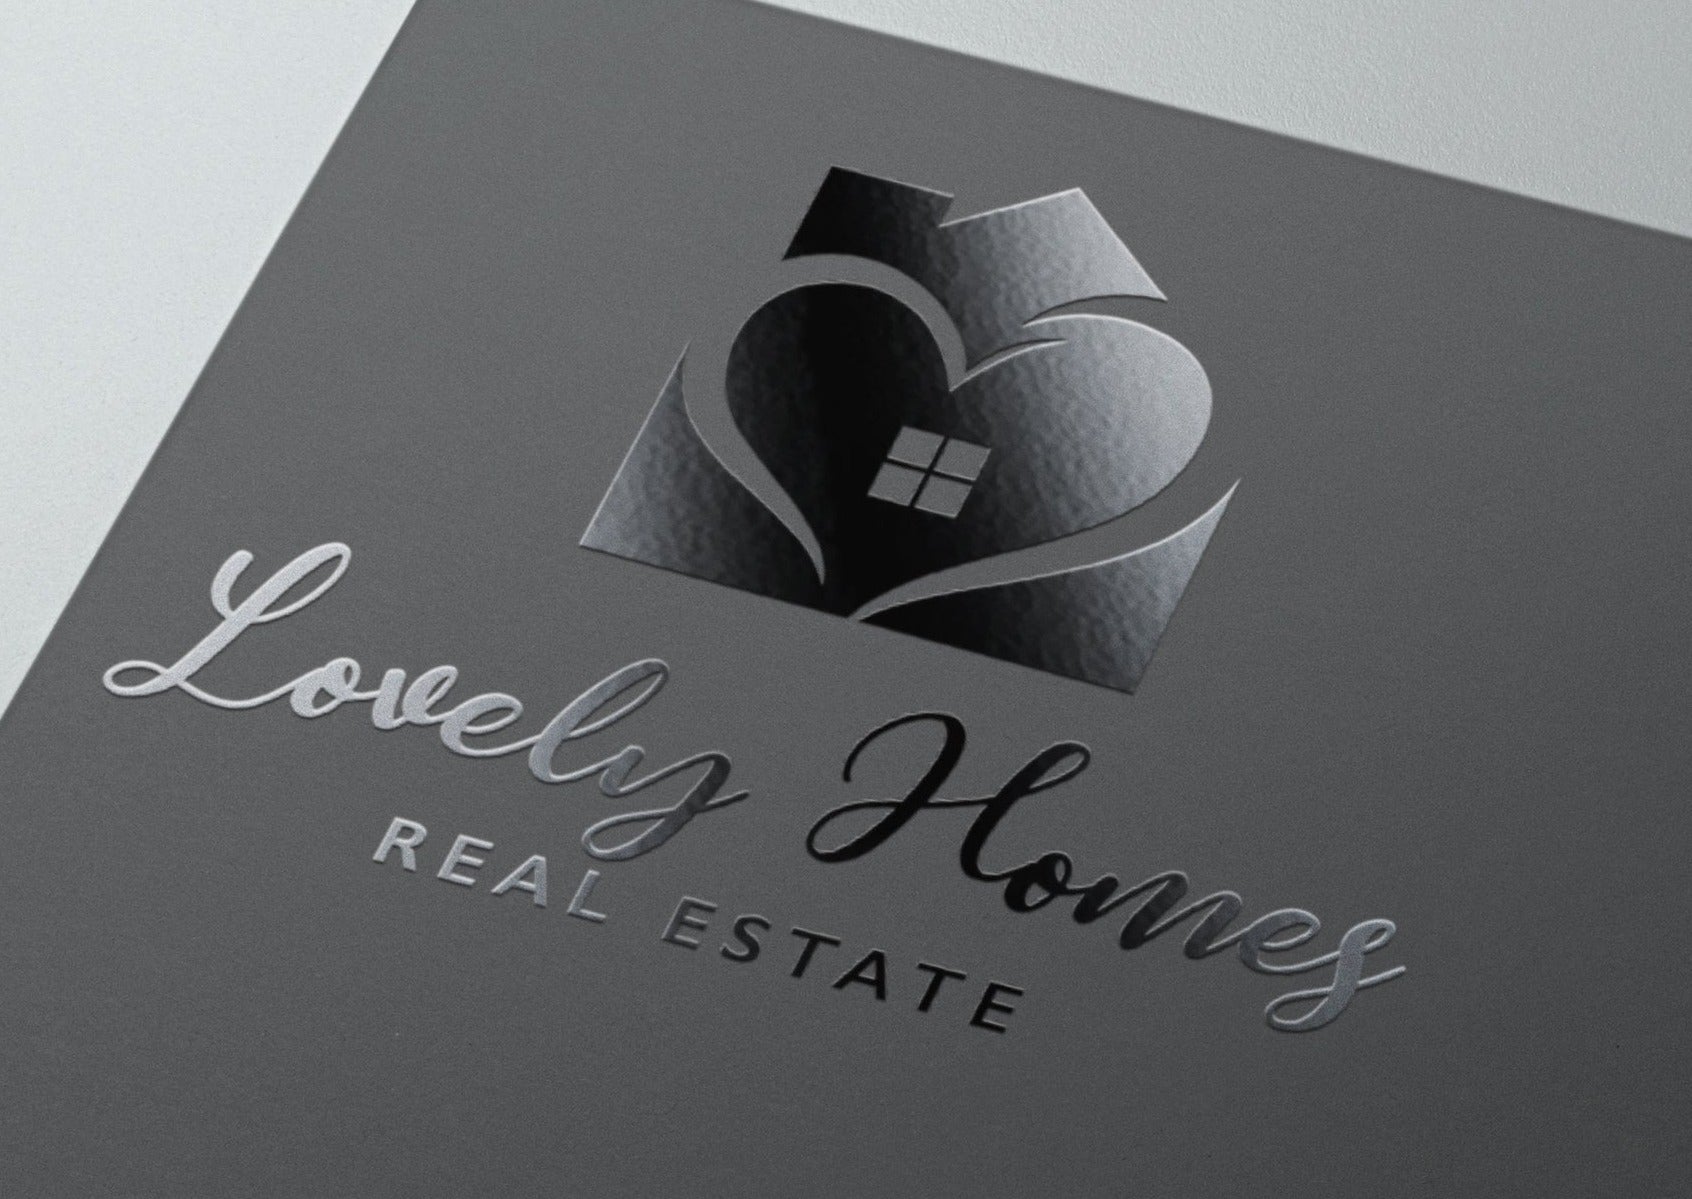 Logo Design | Realtor Logo | Real Estate Logo | Professional Logo | Real Estate Design | House Logo | Home Logo | Heart Design